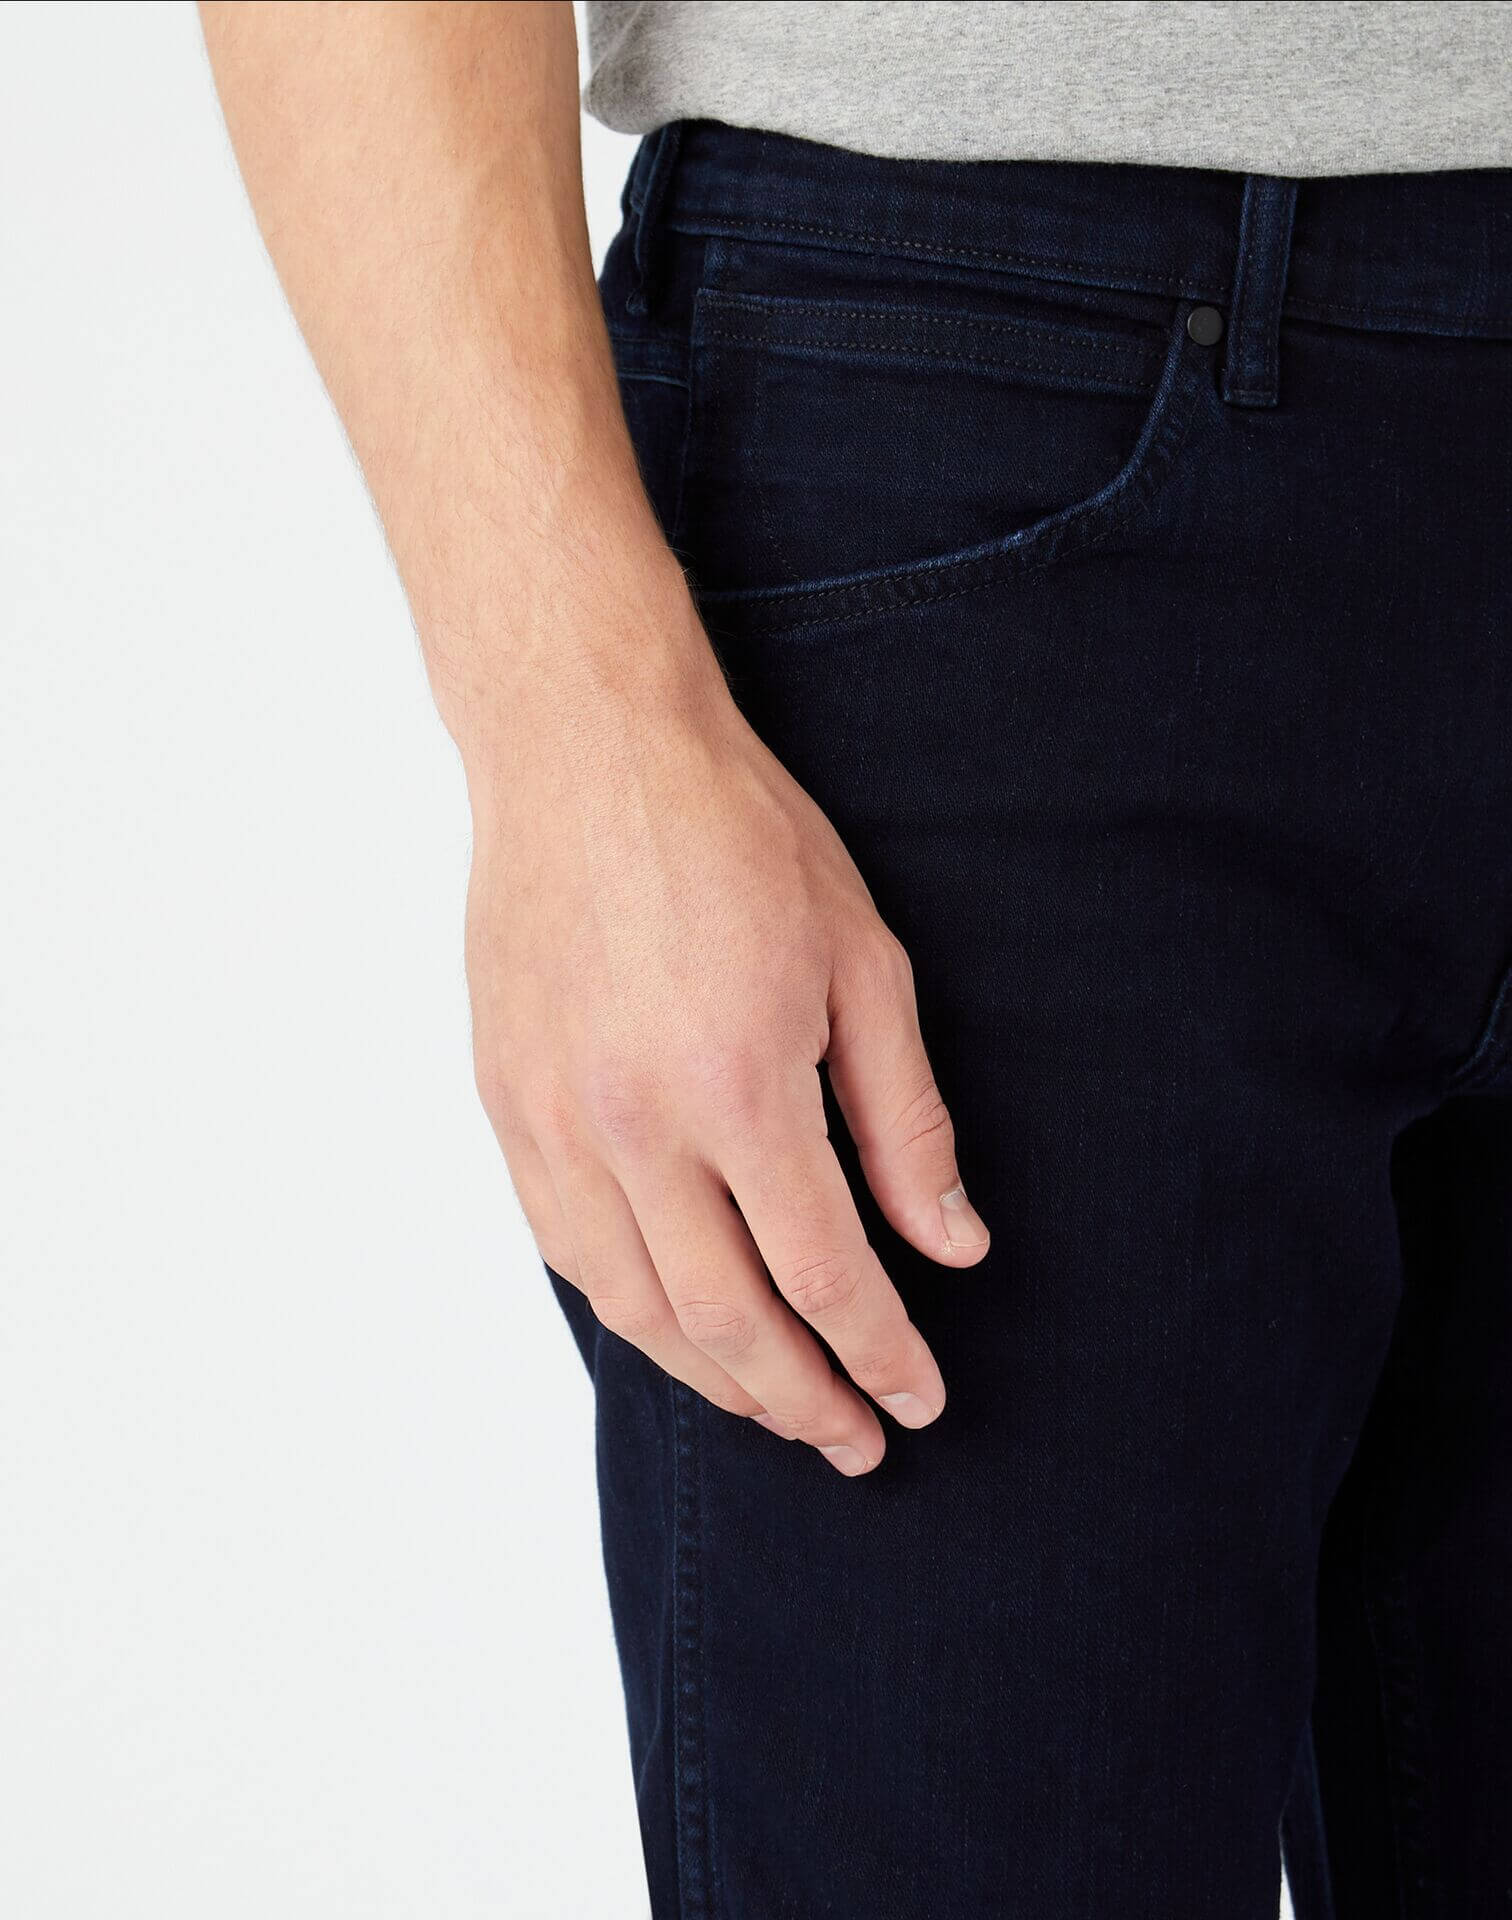 Men's Wrangler Jeans - up to −84%